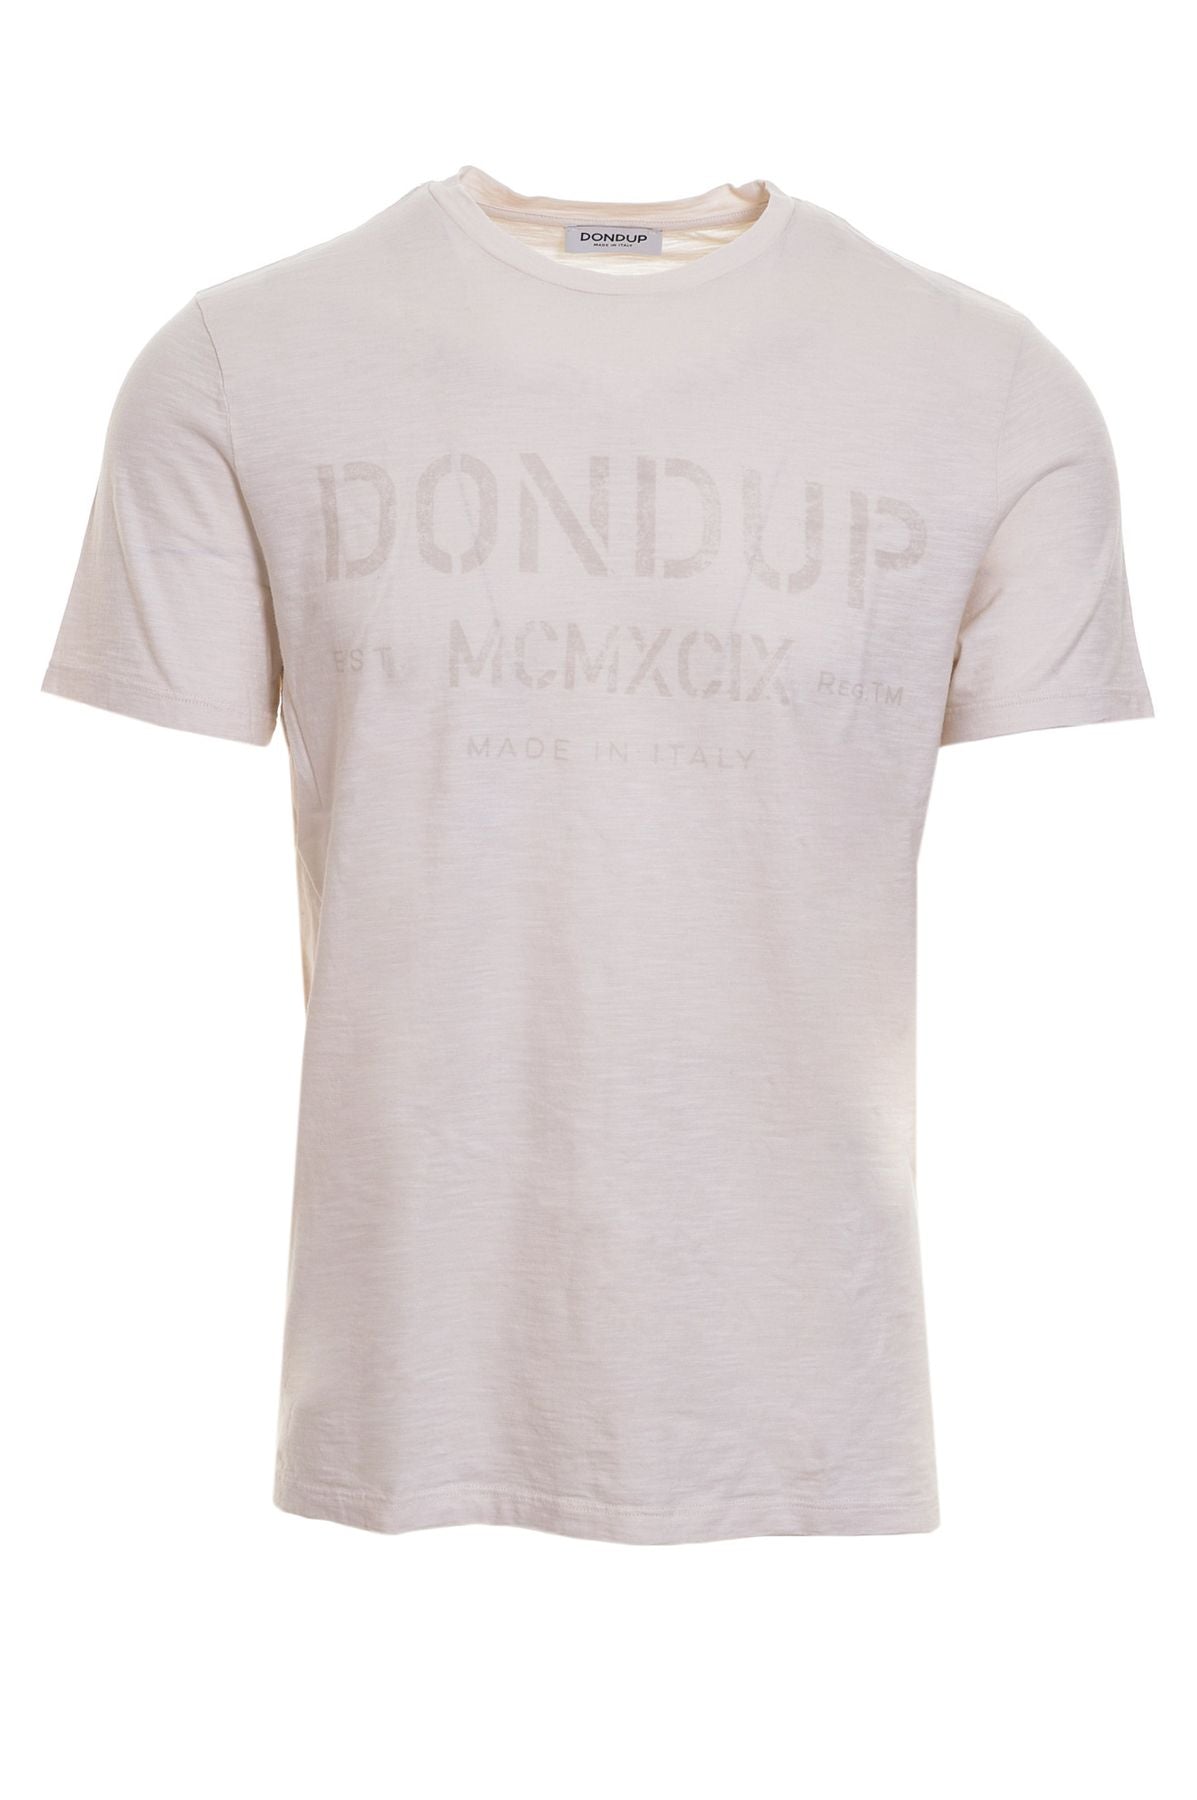 DONDUP T-shirt Primavera/Estate